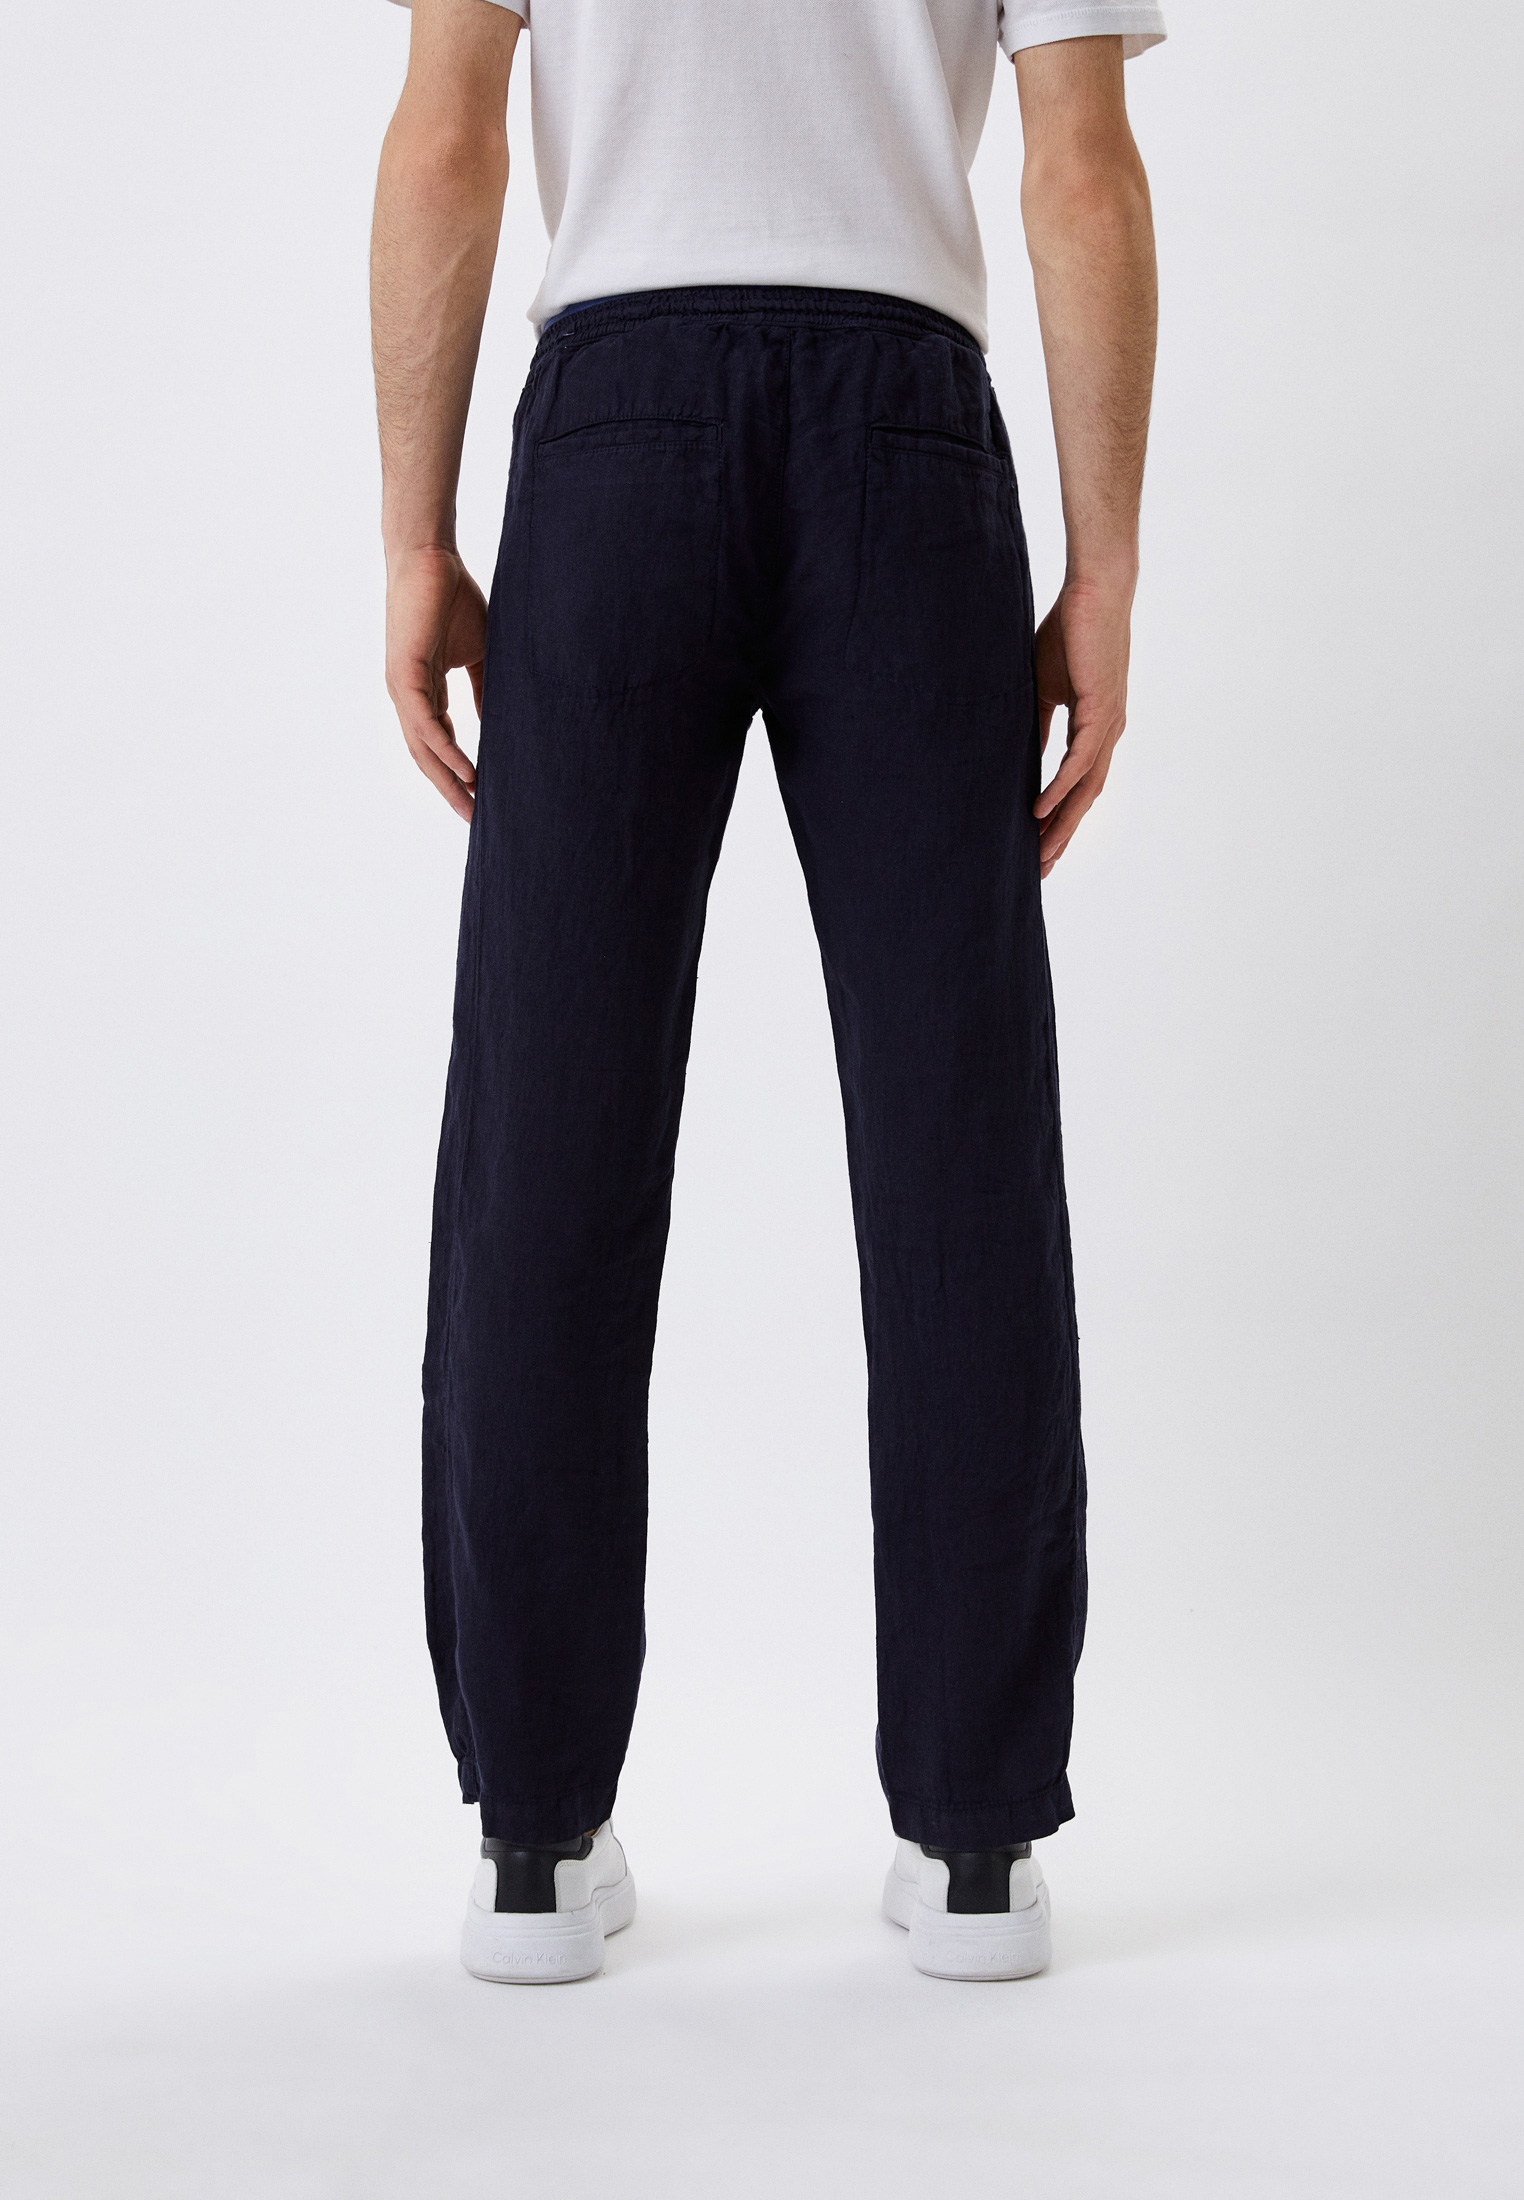 Мужские повседневные брюки Karl Lagerfeld (Карл Лагерфельд) 521815-255815: изображение 3